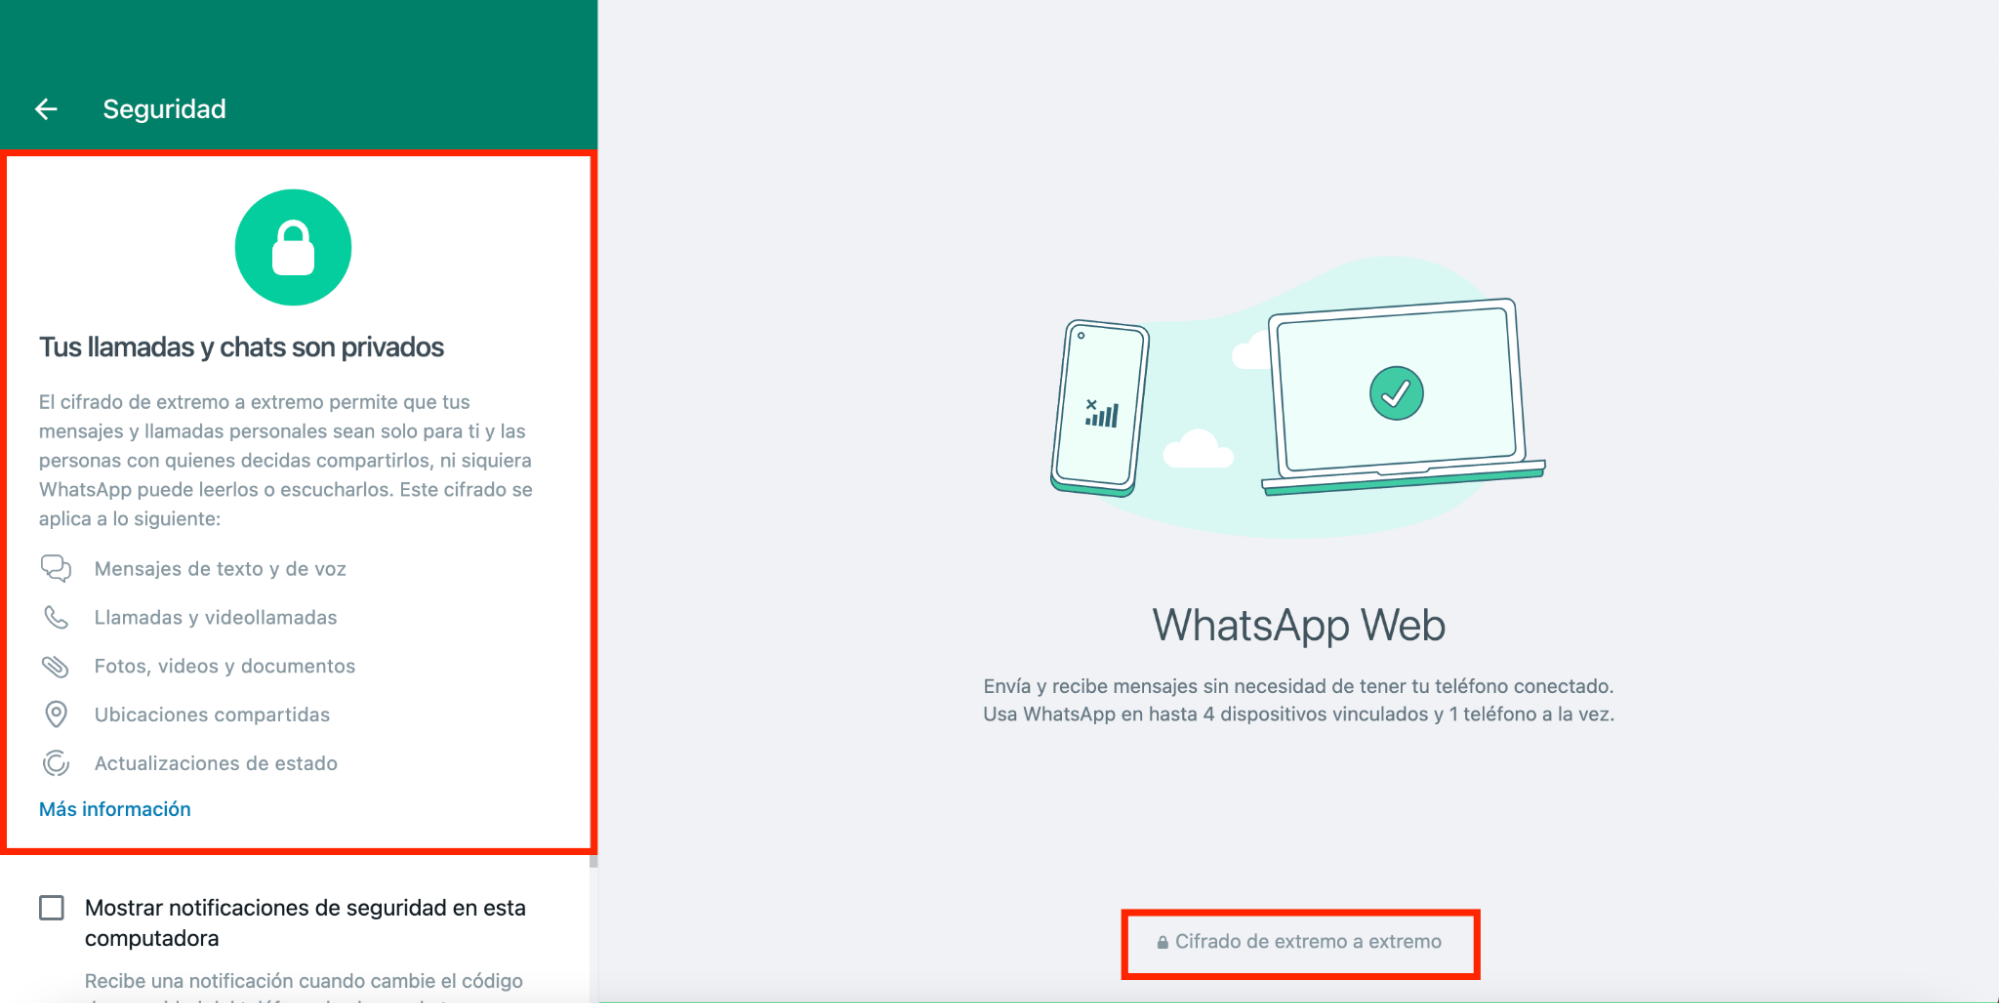 Una API de WhatsApp oficial te ofrece mayor seguridad